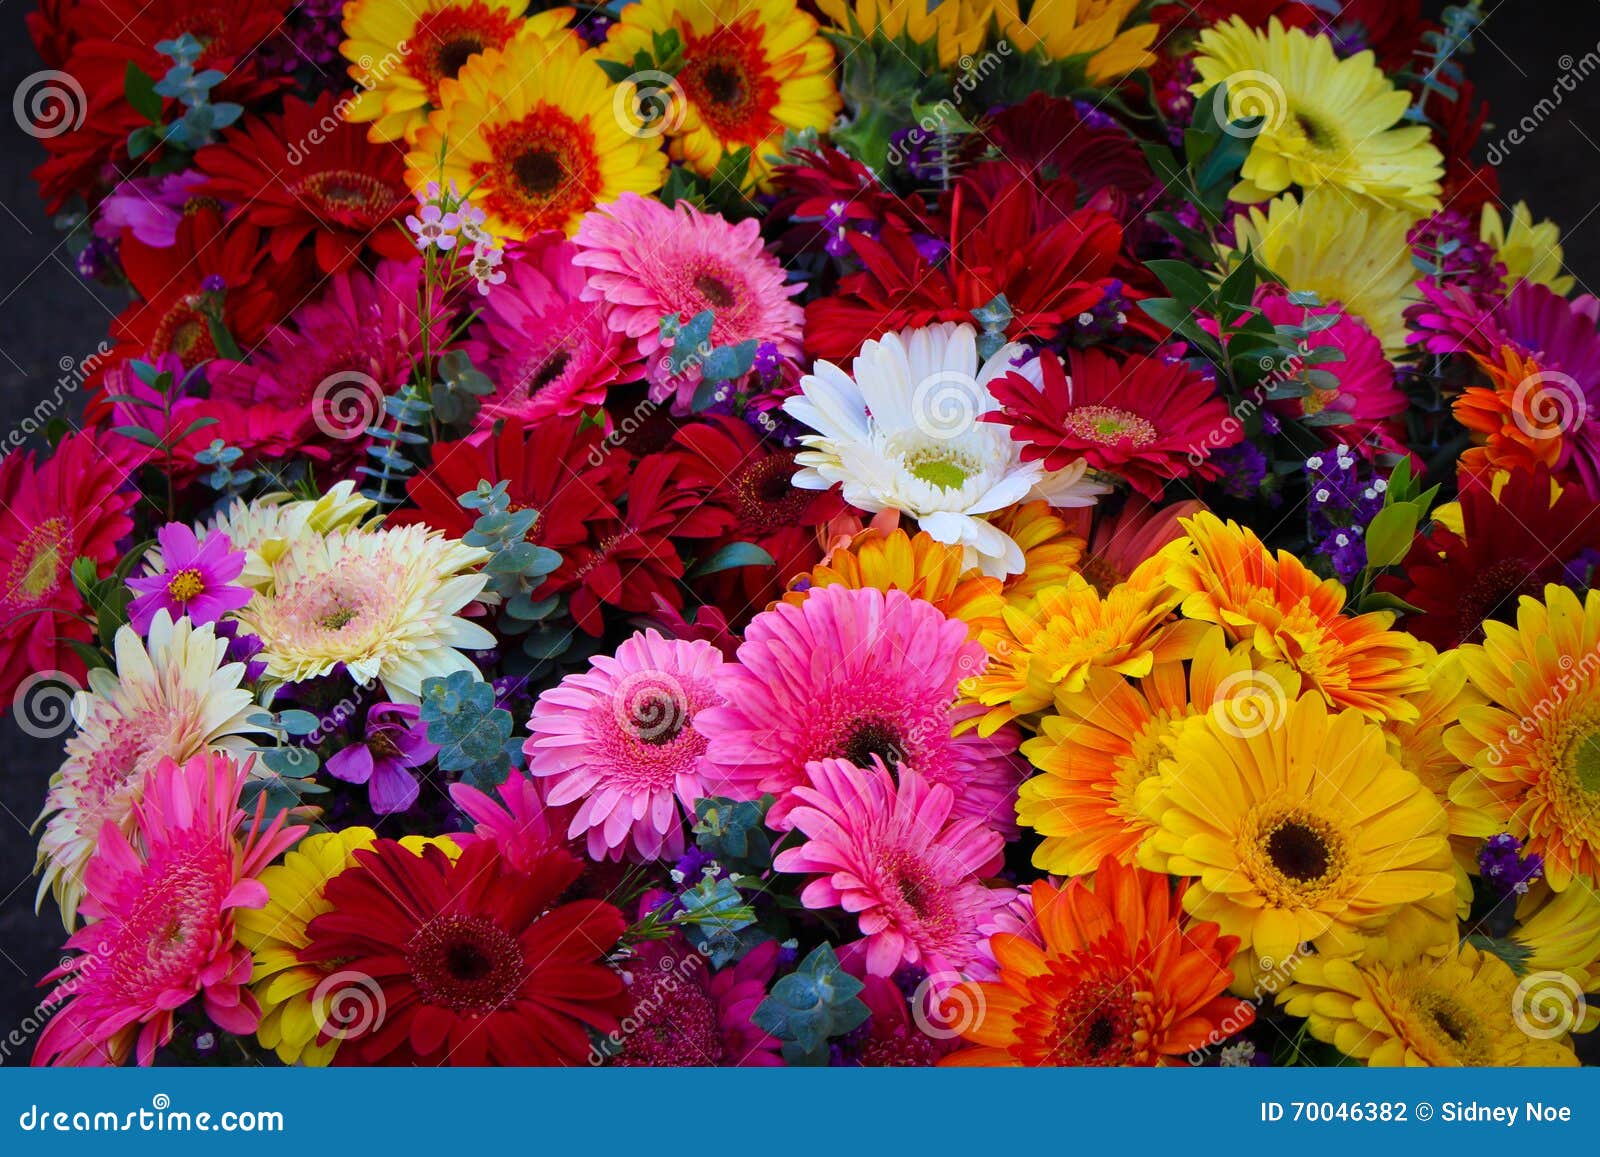 Цветы ассортимент купить цветы в центре нижнего новгорода